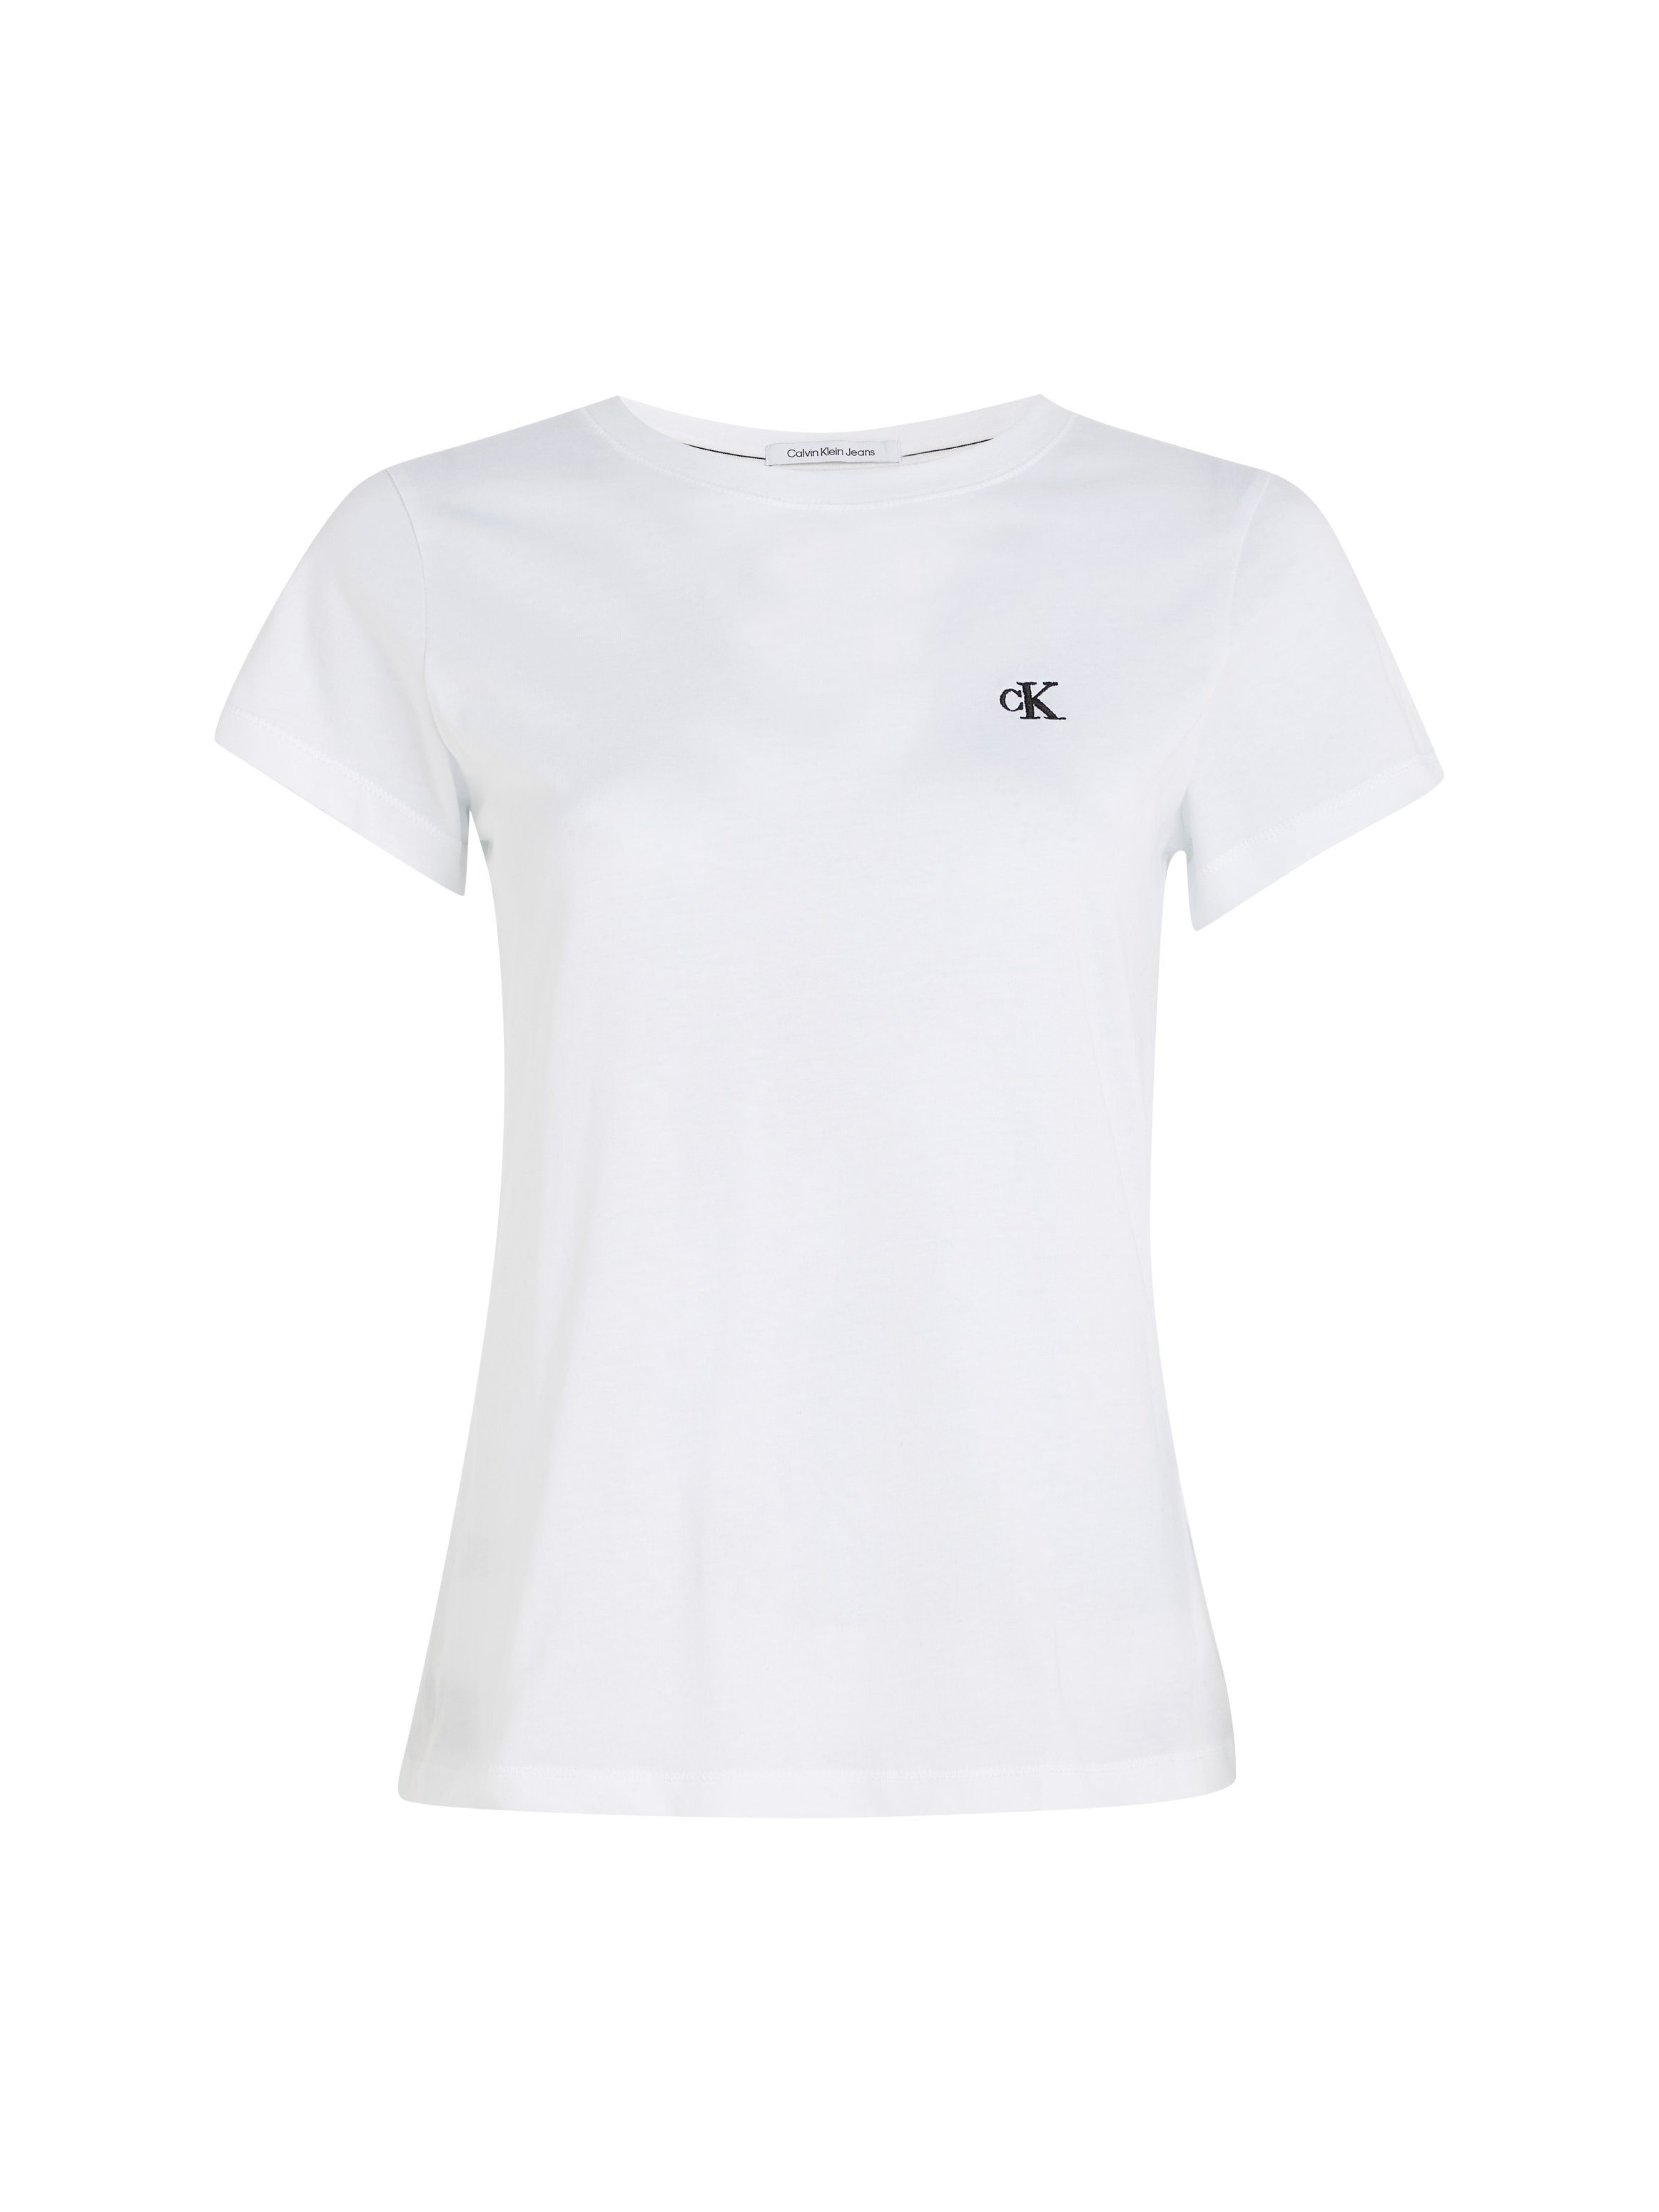 Calvin Klein CK TEE T-Shirt white EMBROIDERY brigth Jeans mit CK Brust Logo der SLIM gesticktem auf